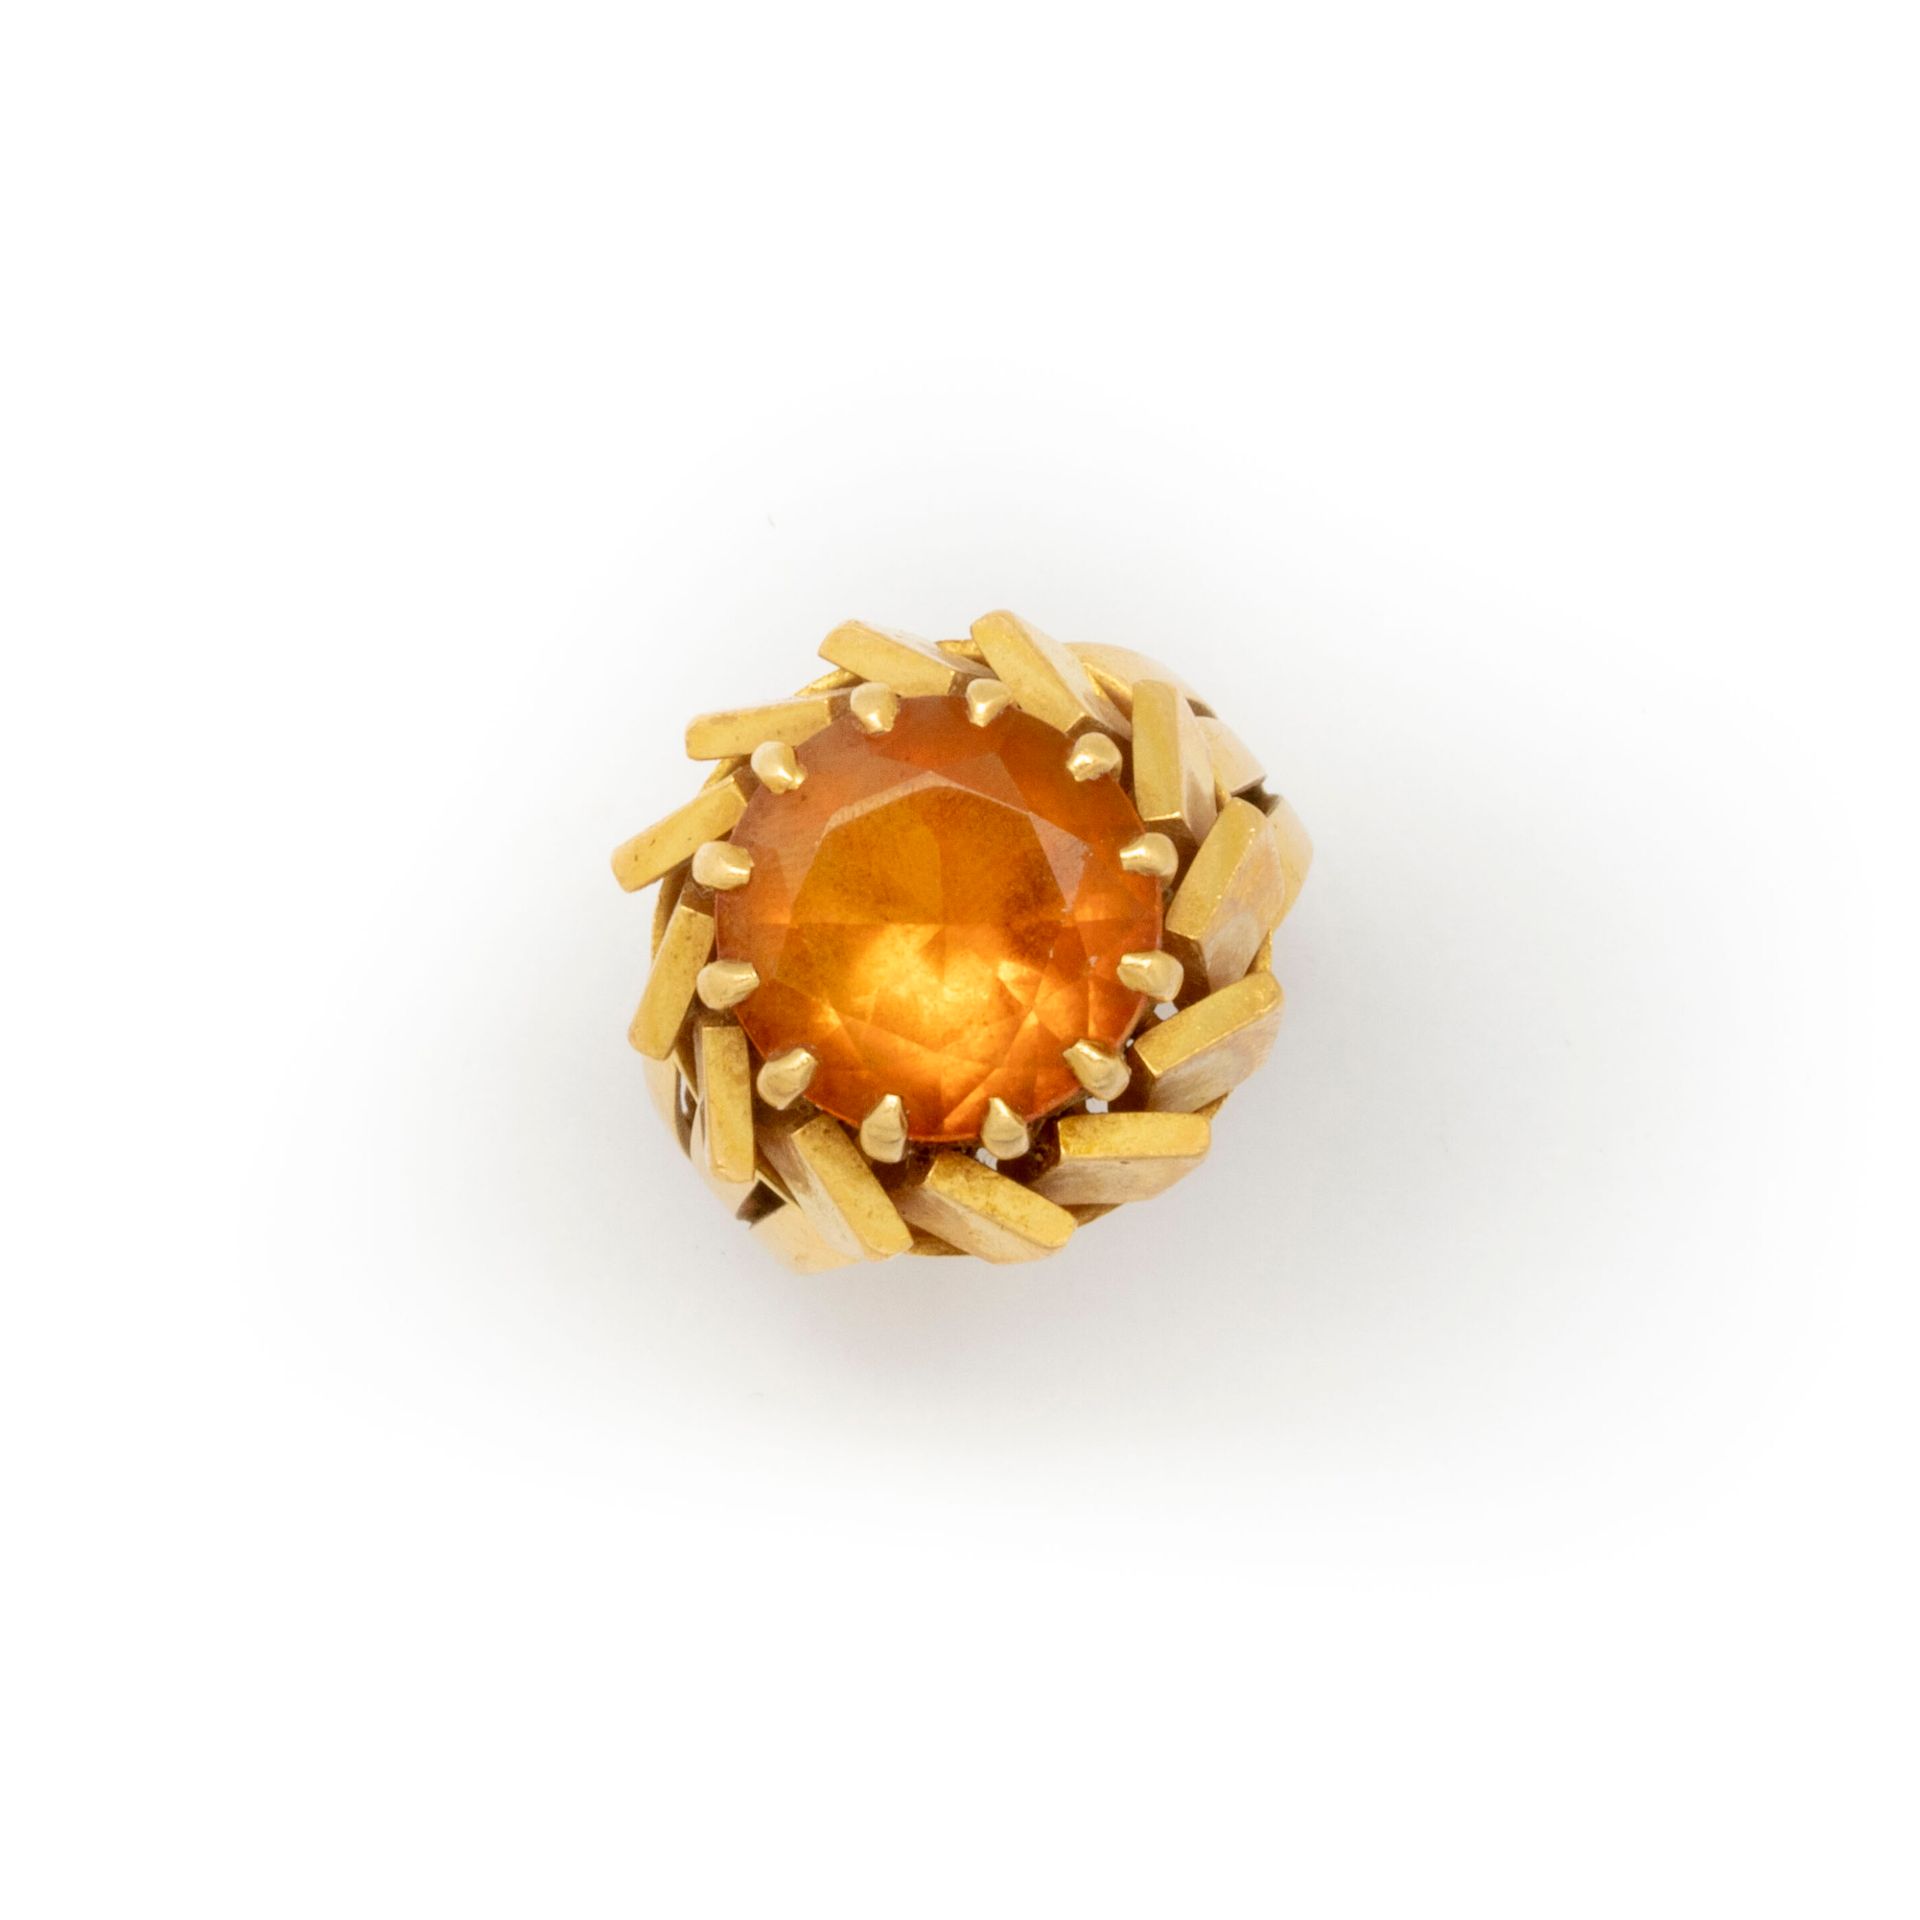 Null Ring aus Gelbgold um 1950, verziert mit einem runden Topas.

TDD: 52

Brutt&hellip;